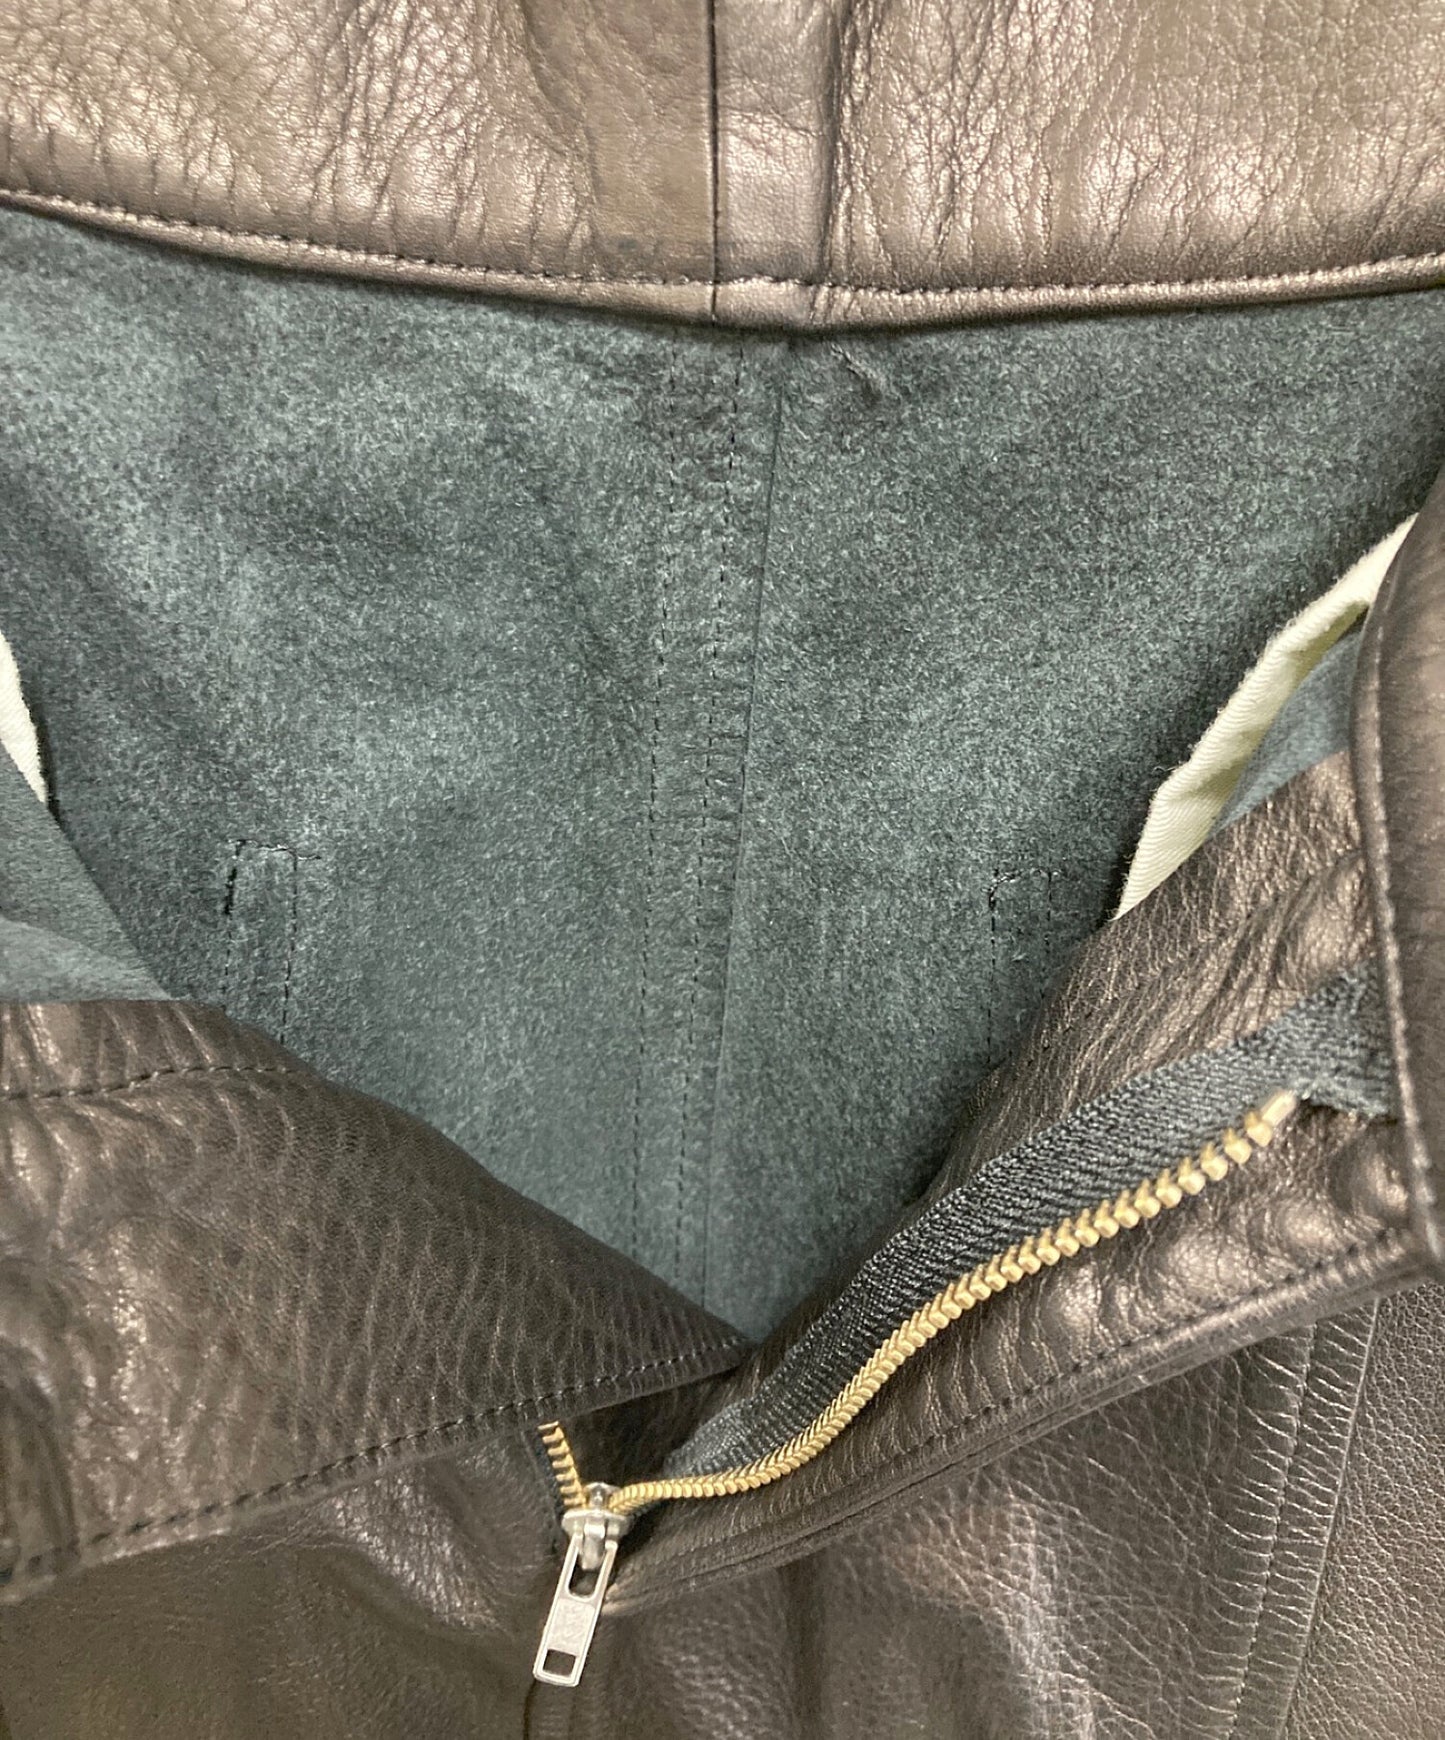 [Pre-owned] black market COMME des GARCONS Cowhide leather sarouel pants OS-P001